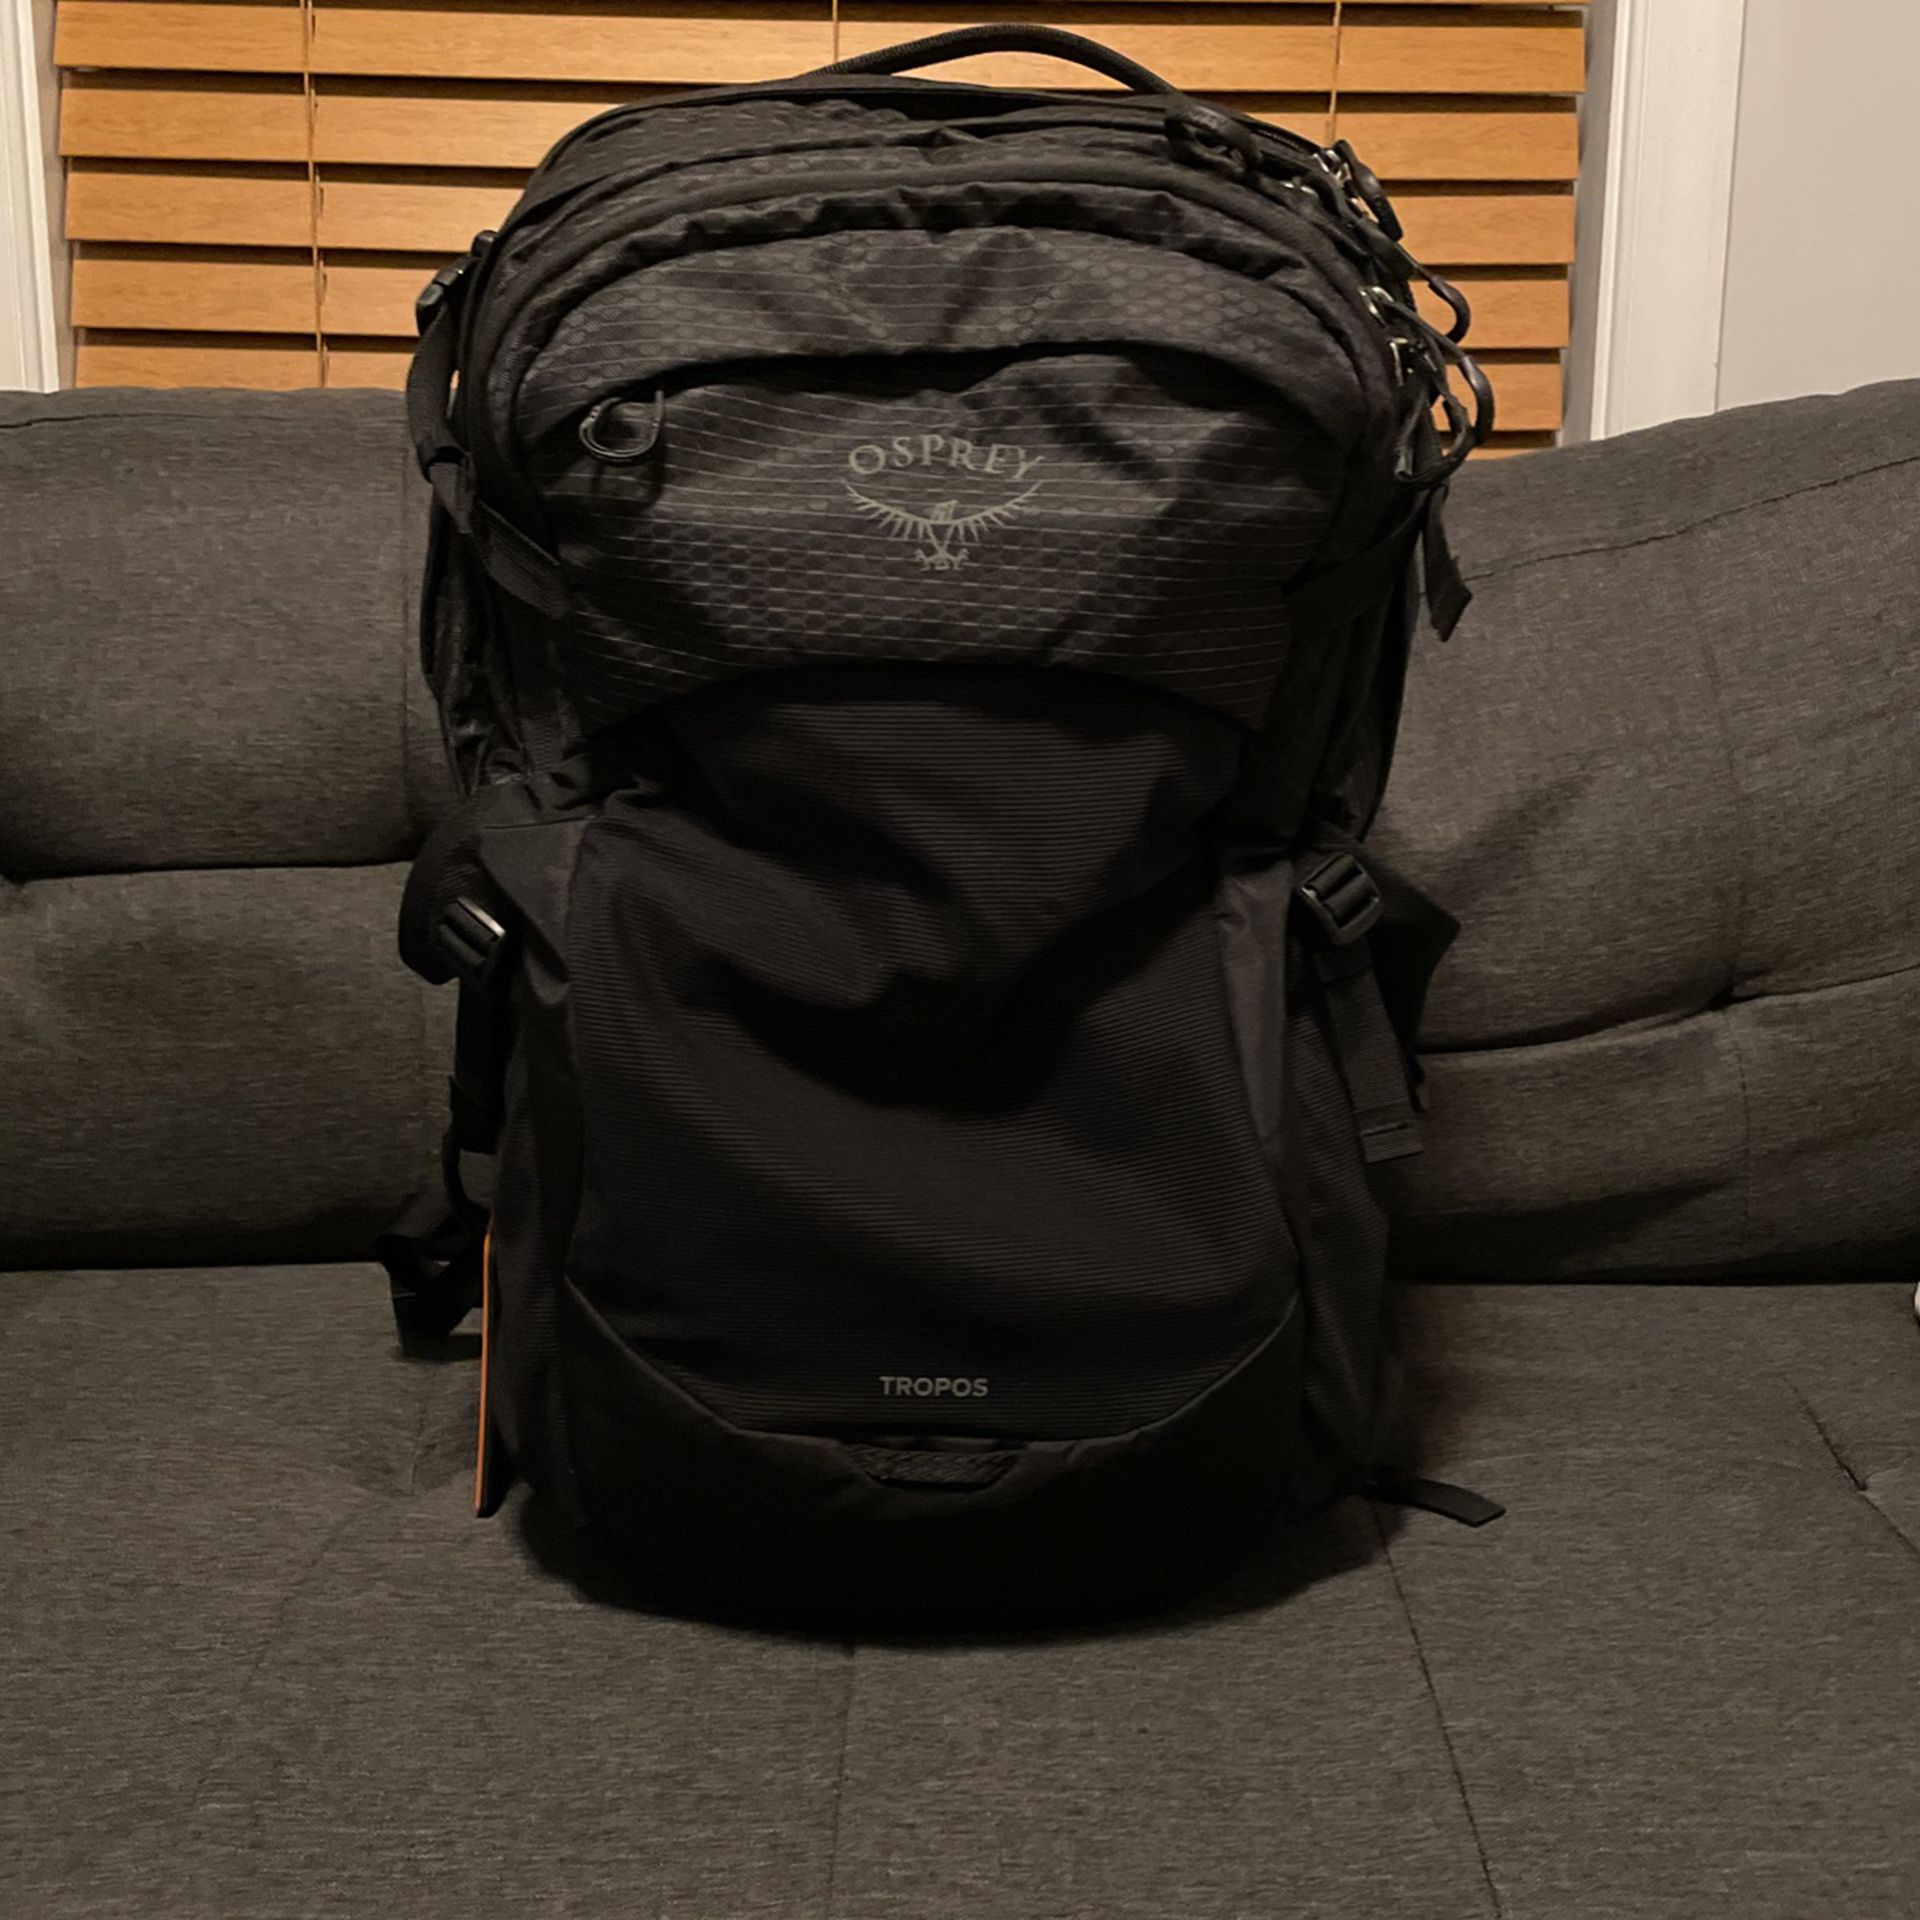 Osprey Tropos Backpack